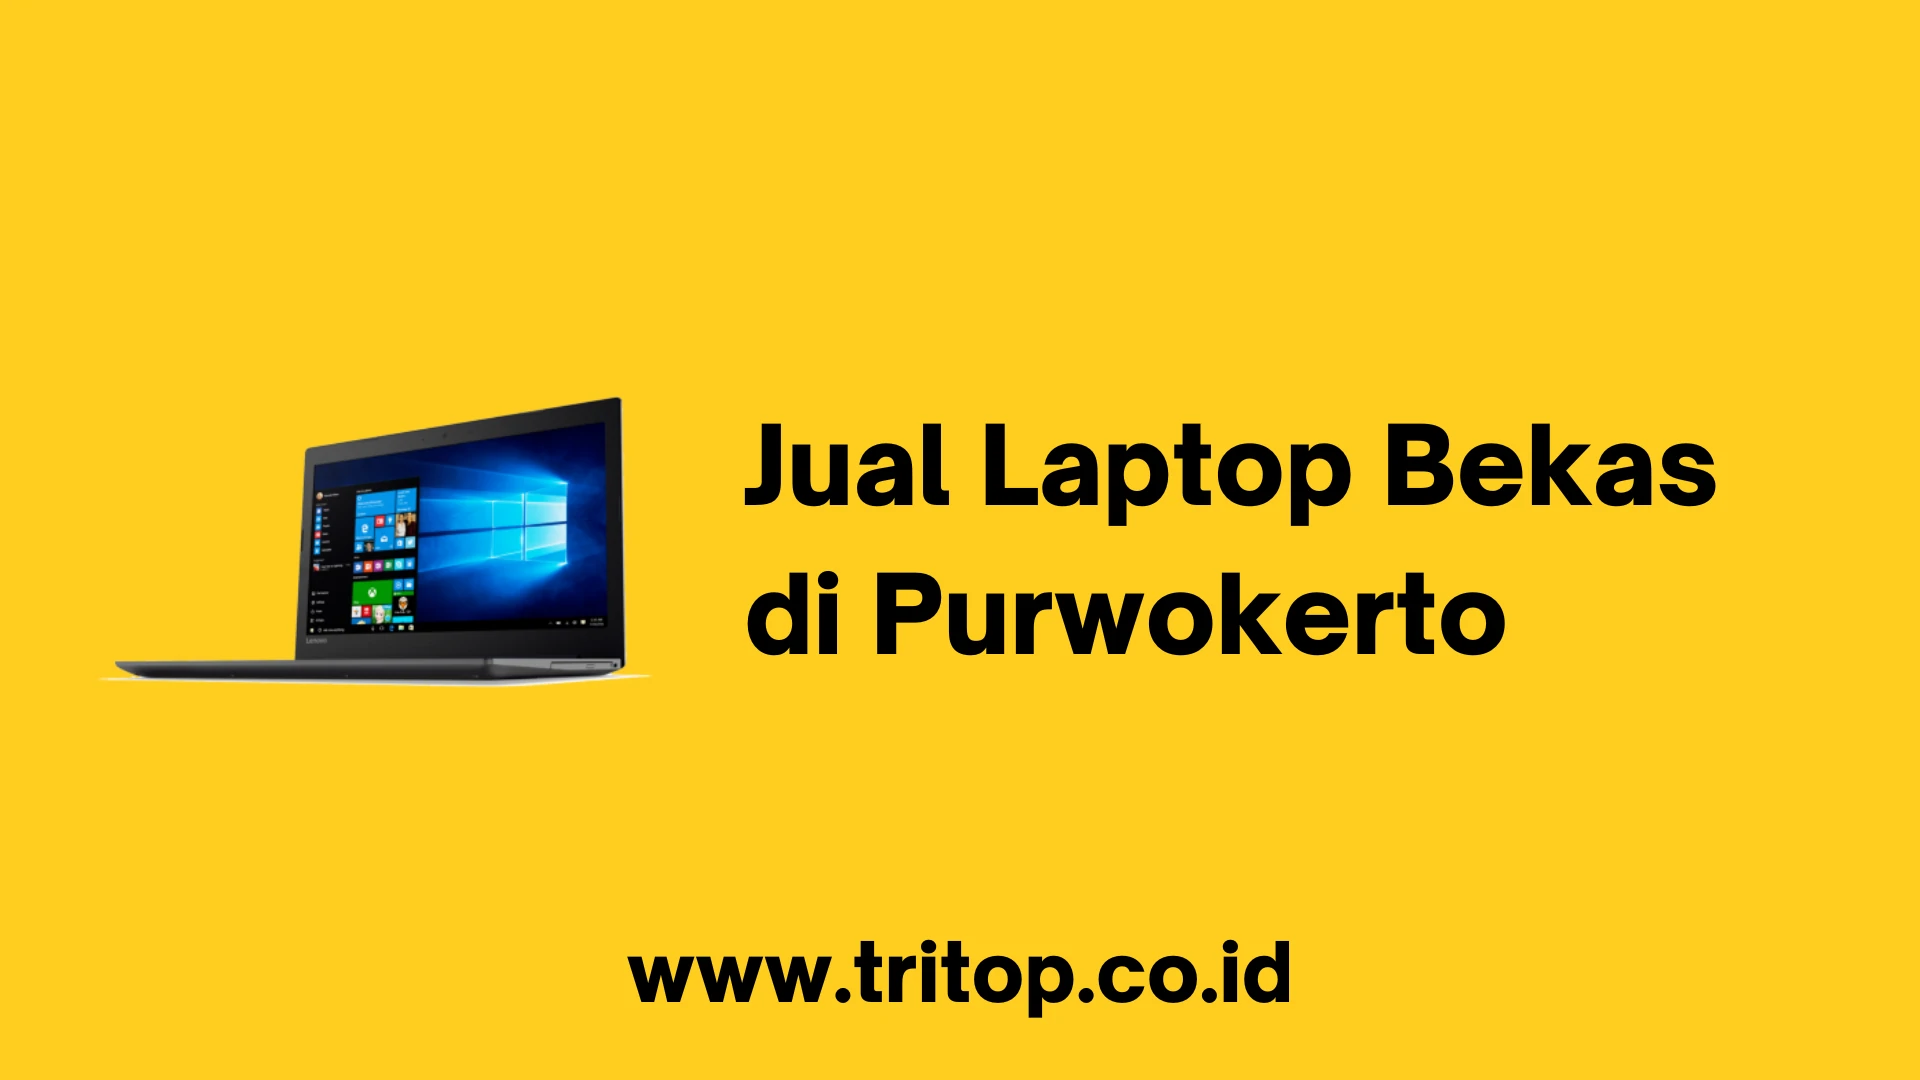 Jual Laptop Bekas di Purwokerto